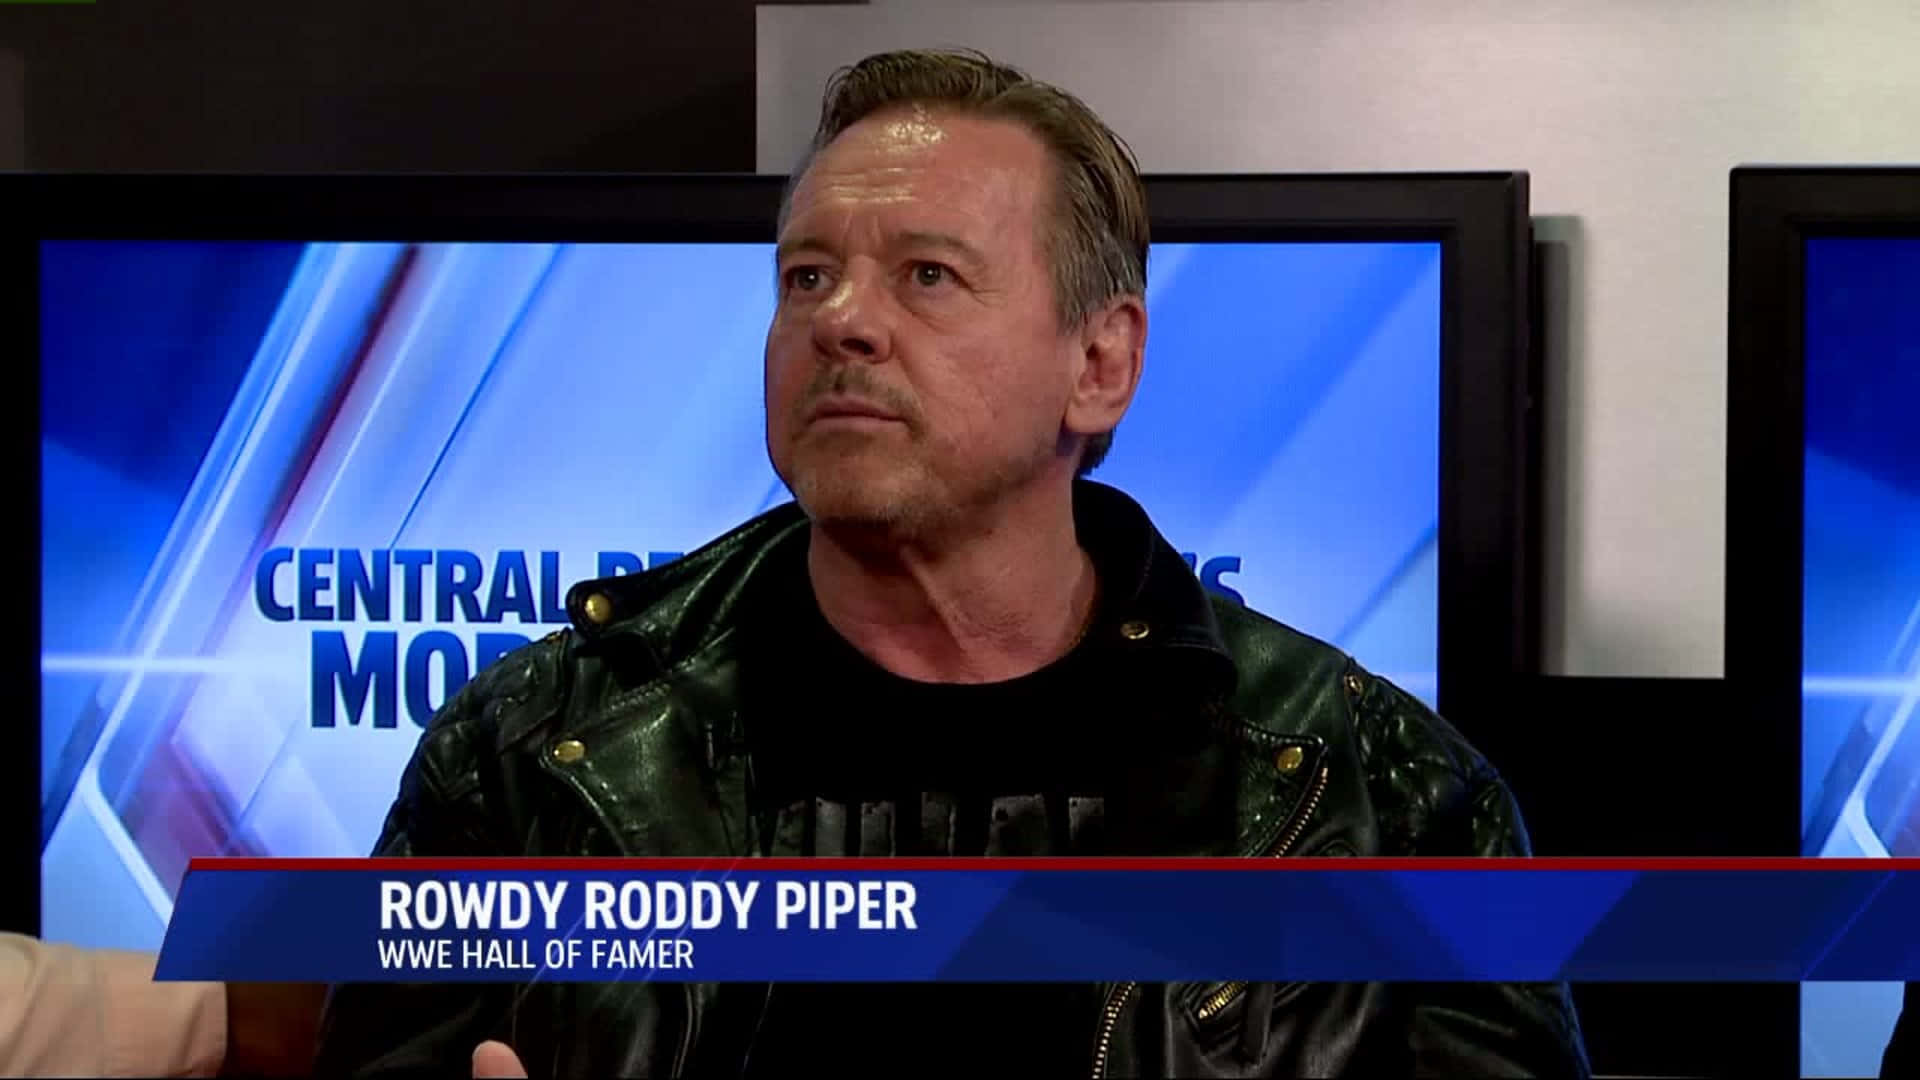 Roddypiper I Fox 23 News-intervju. Wallpaper